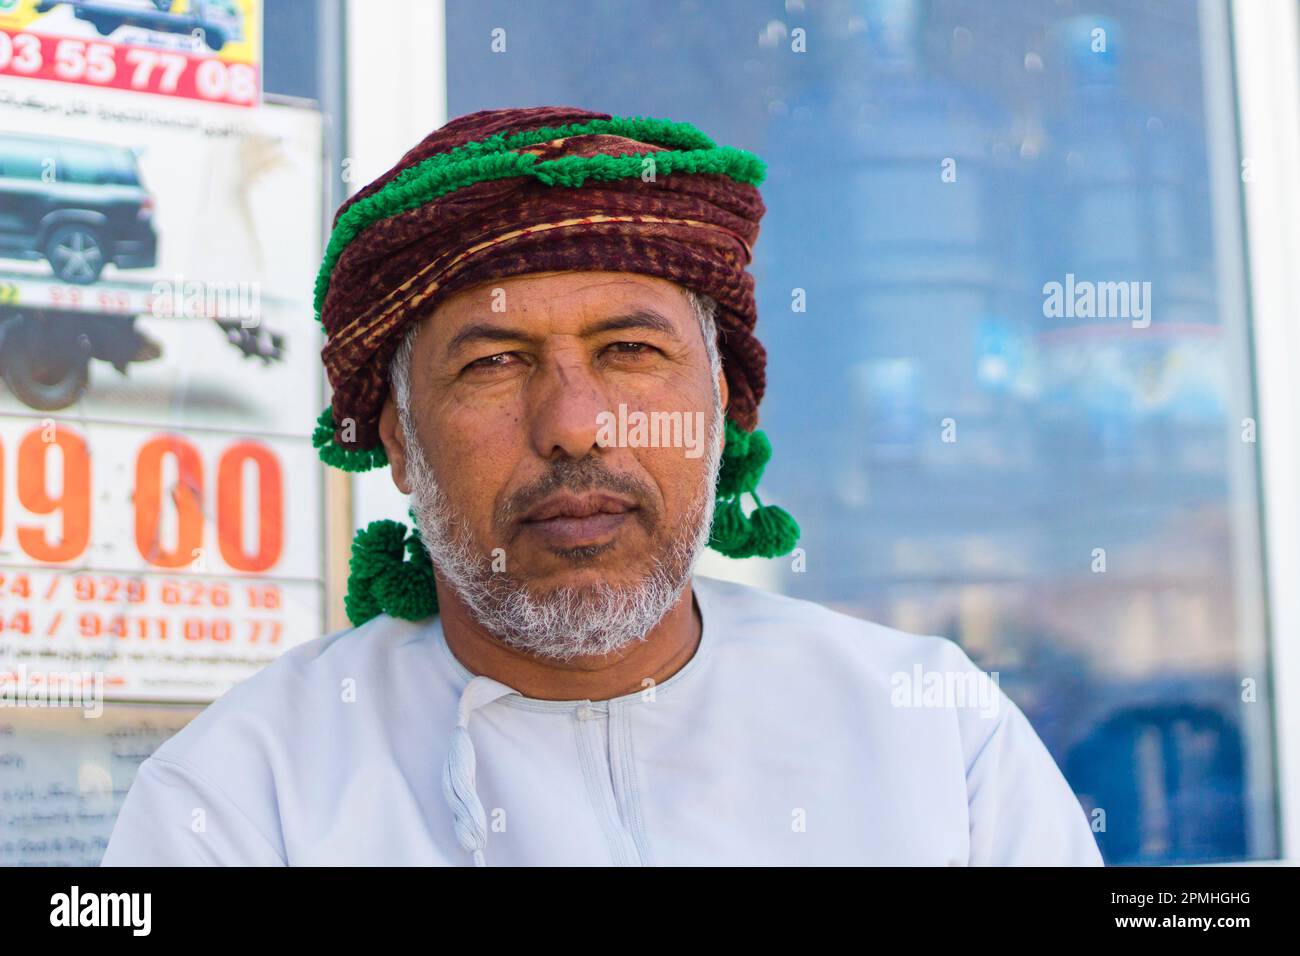 Porträt eines omanischen Mannes mit Kopfbedeckungen, die in die Kamera schauen, Hasik, Dhofar Governorate, Oman, Naher Osten Stockfoto